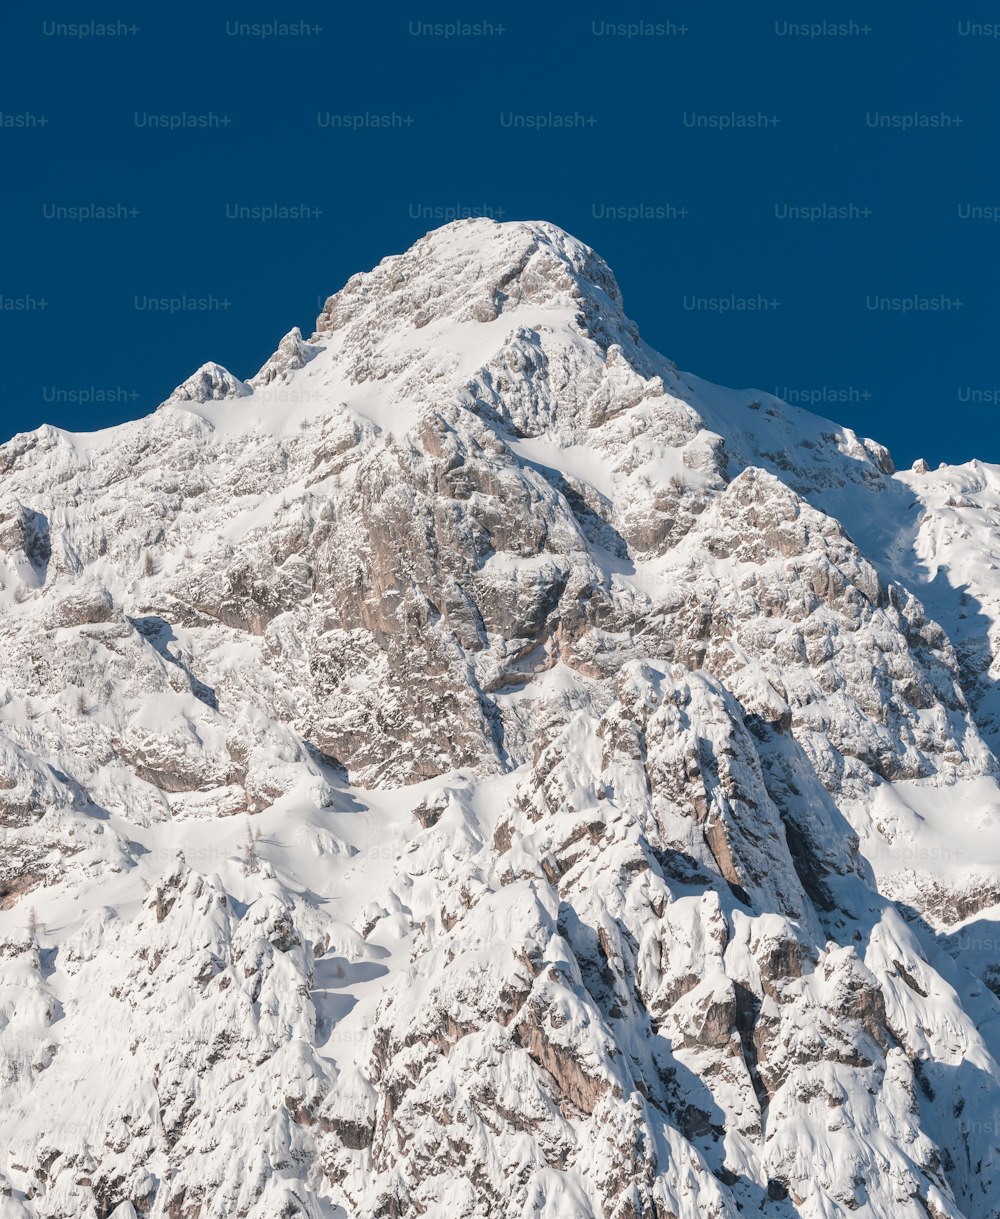 Una grande montagna coperta di neve sotto un cielo blu